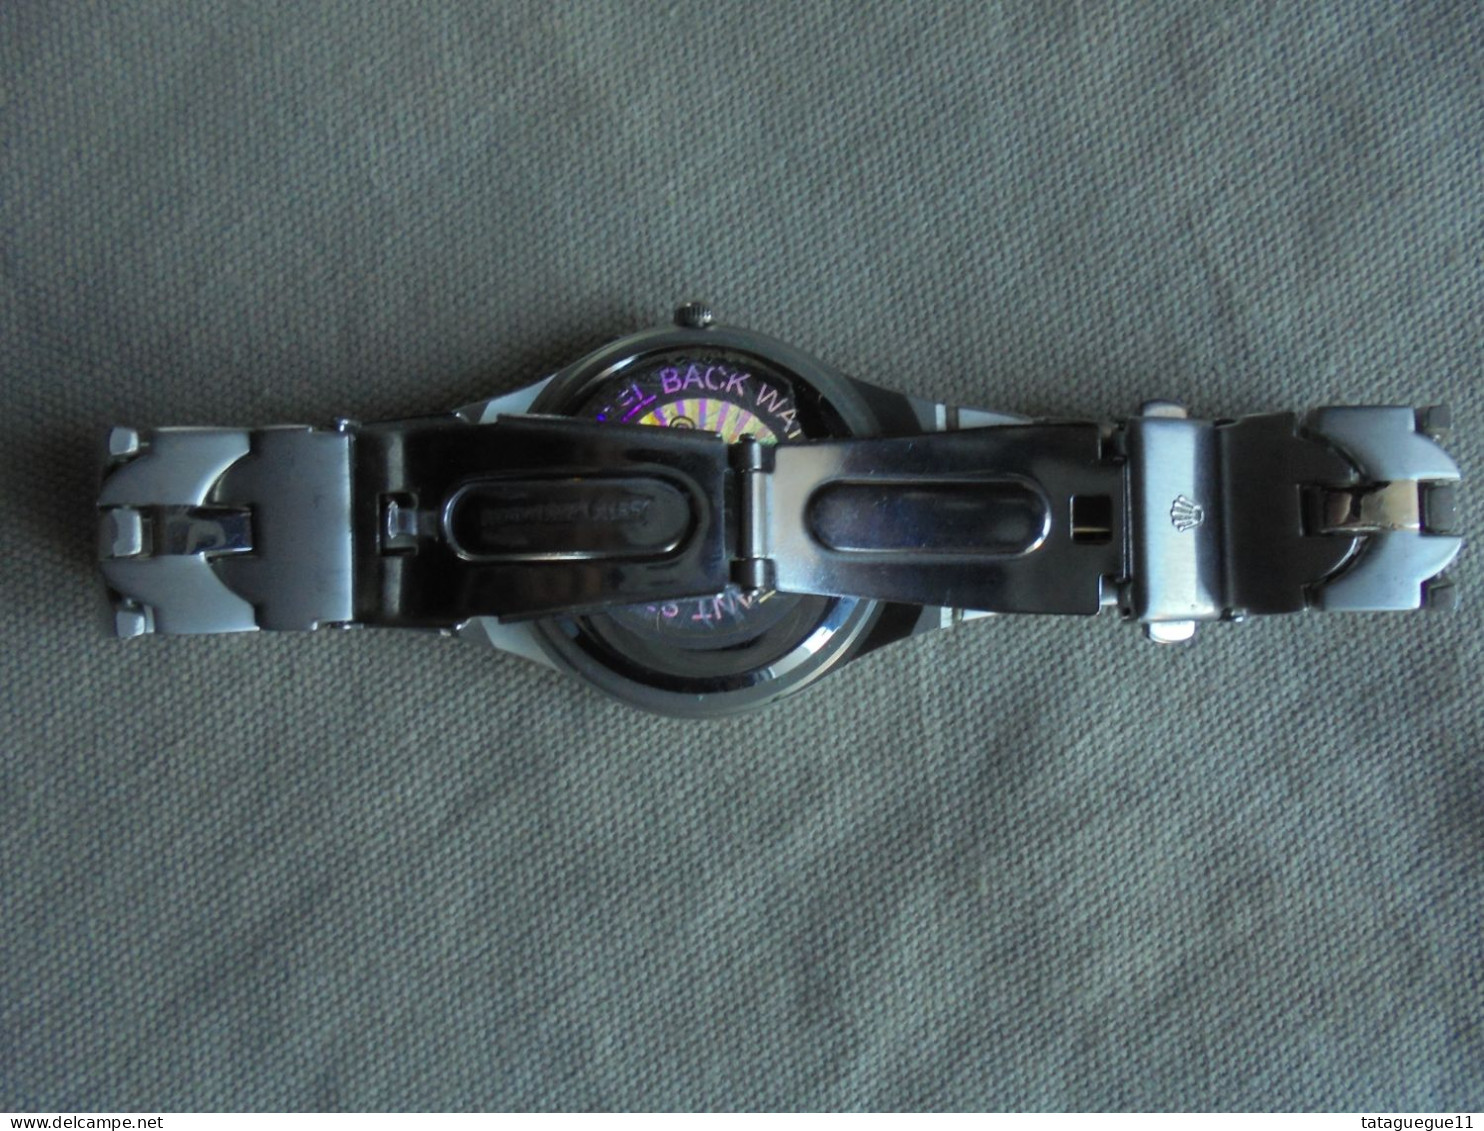 Vintage - Montre Bracelet Homme IK Colleiten - Relojes Modernos